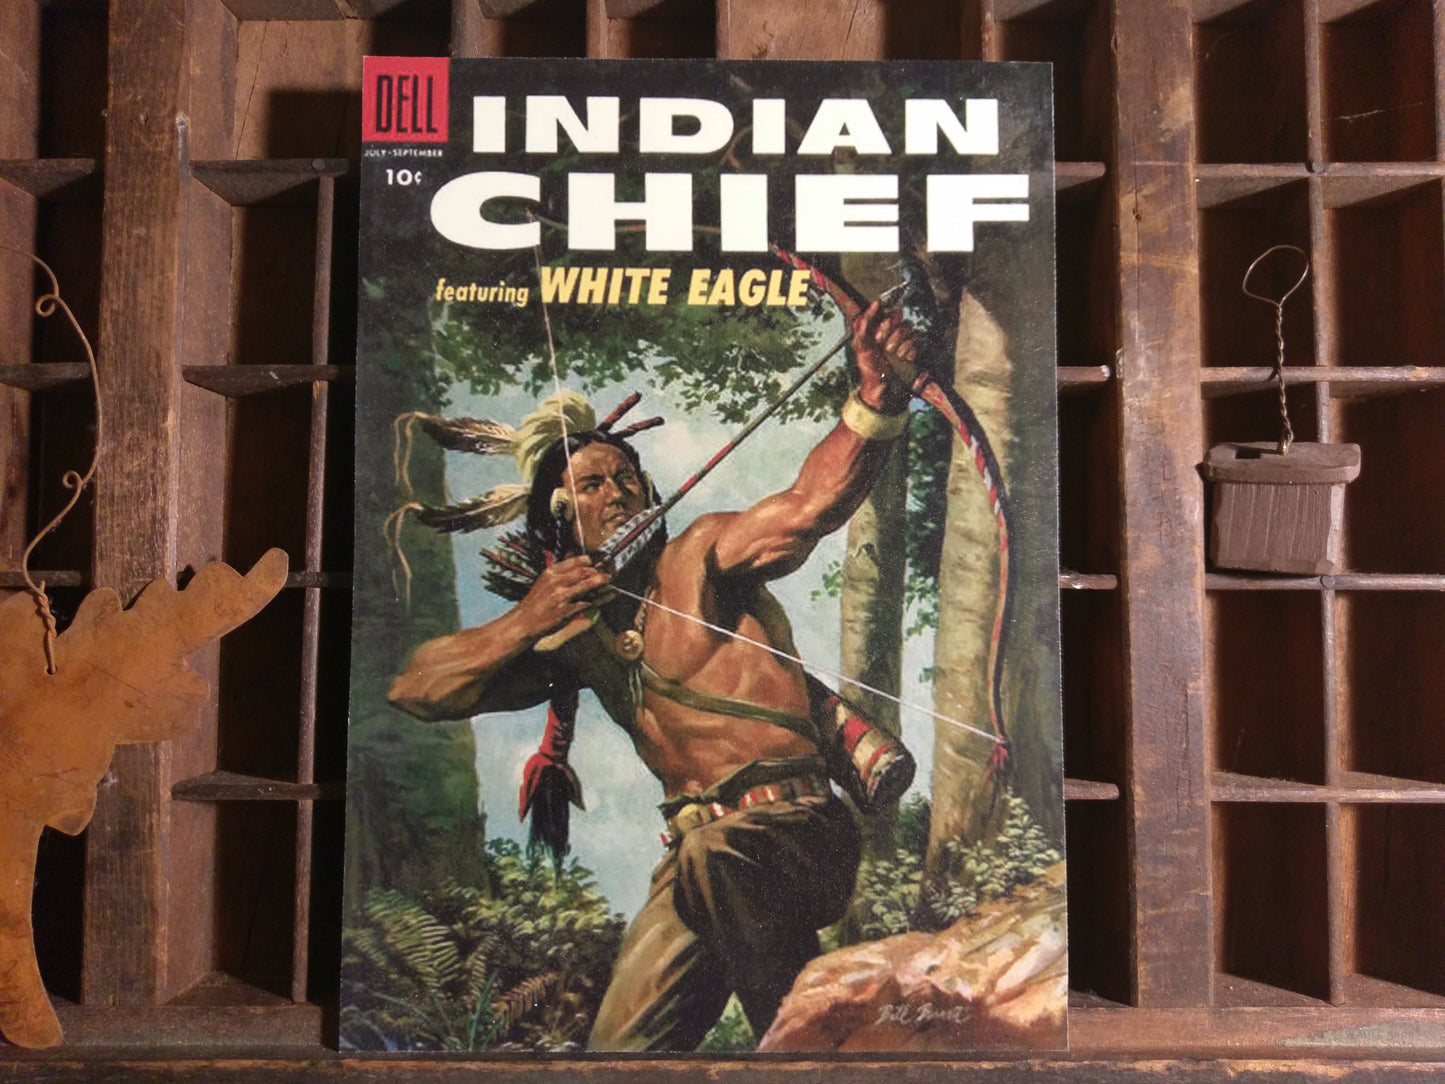 Dell Indian Chief Comics Wood Plaque